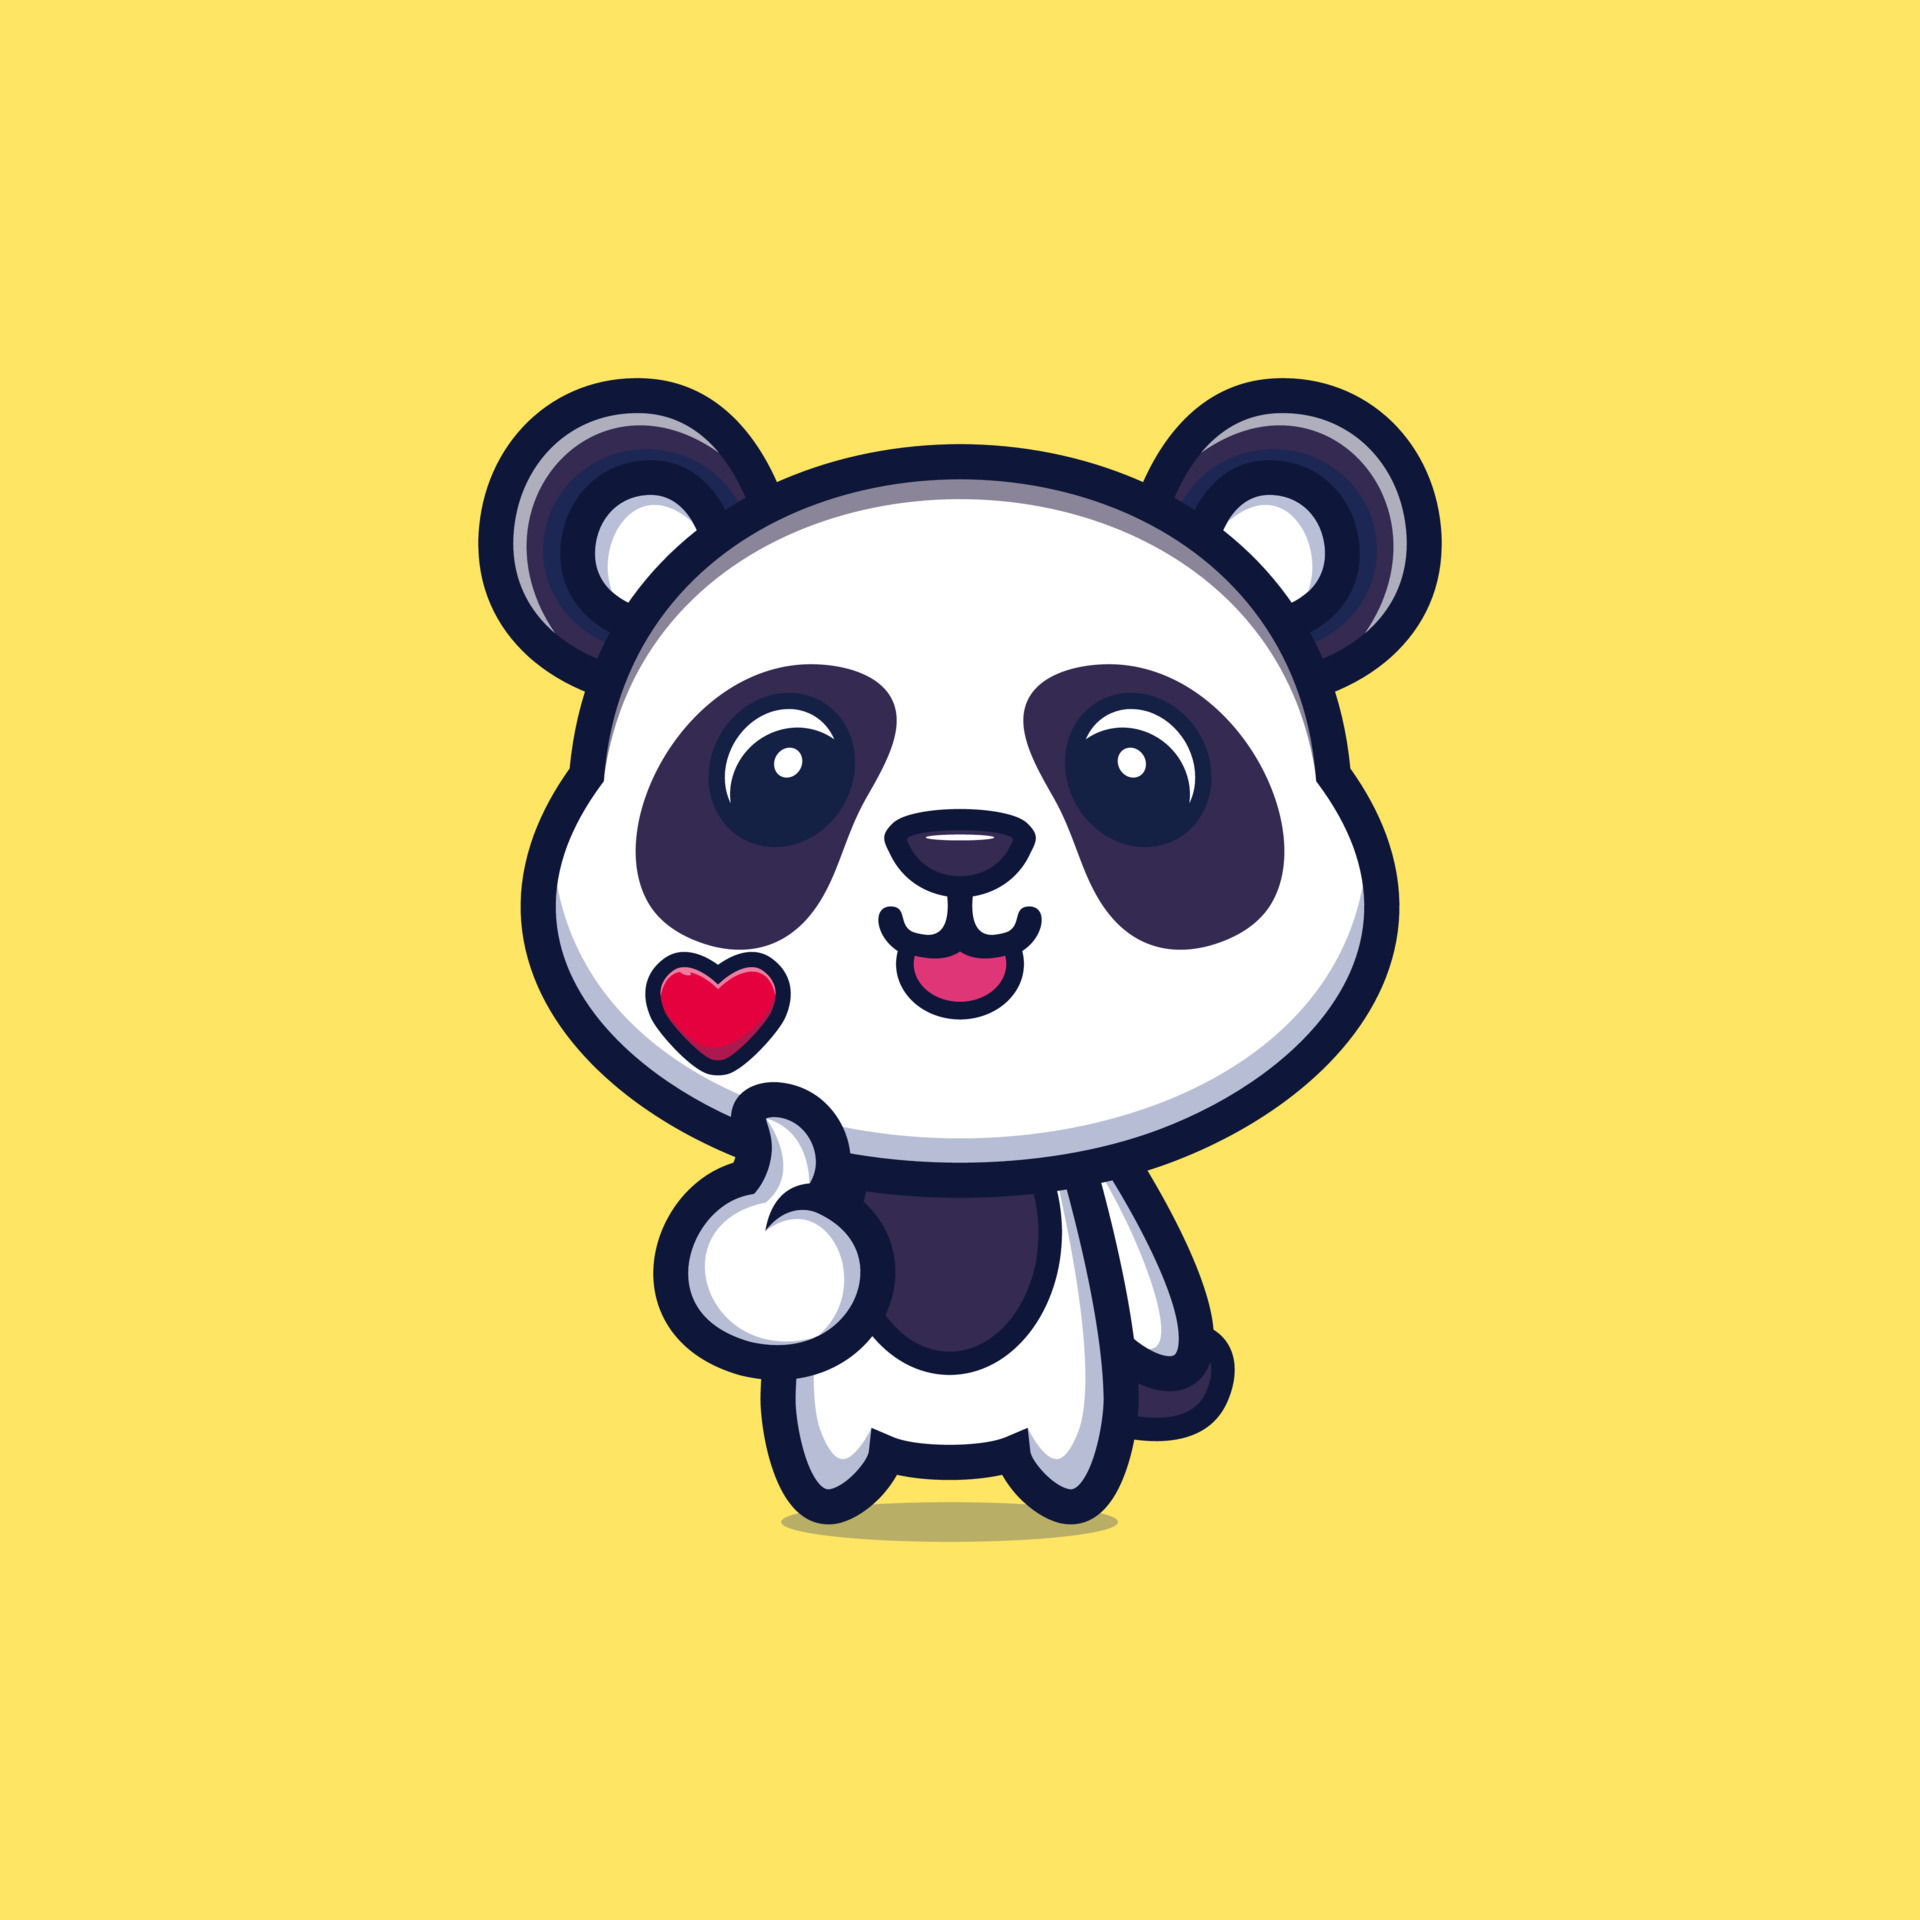 Cute cool style panda mascot cartoon character 8668616 Vector Art at  Vecteezy